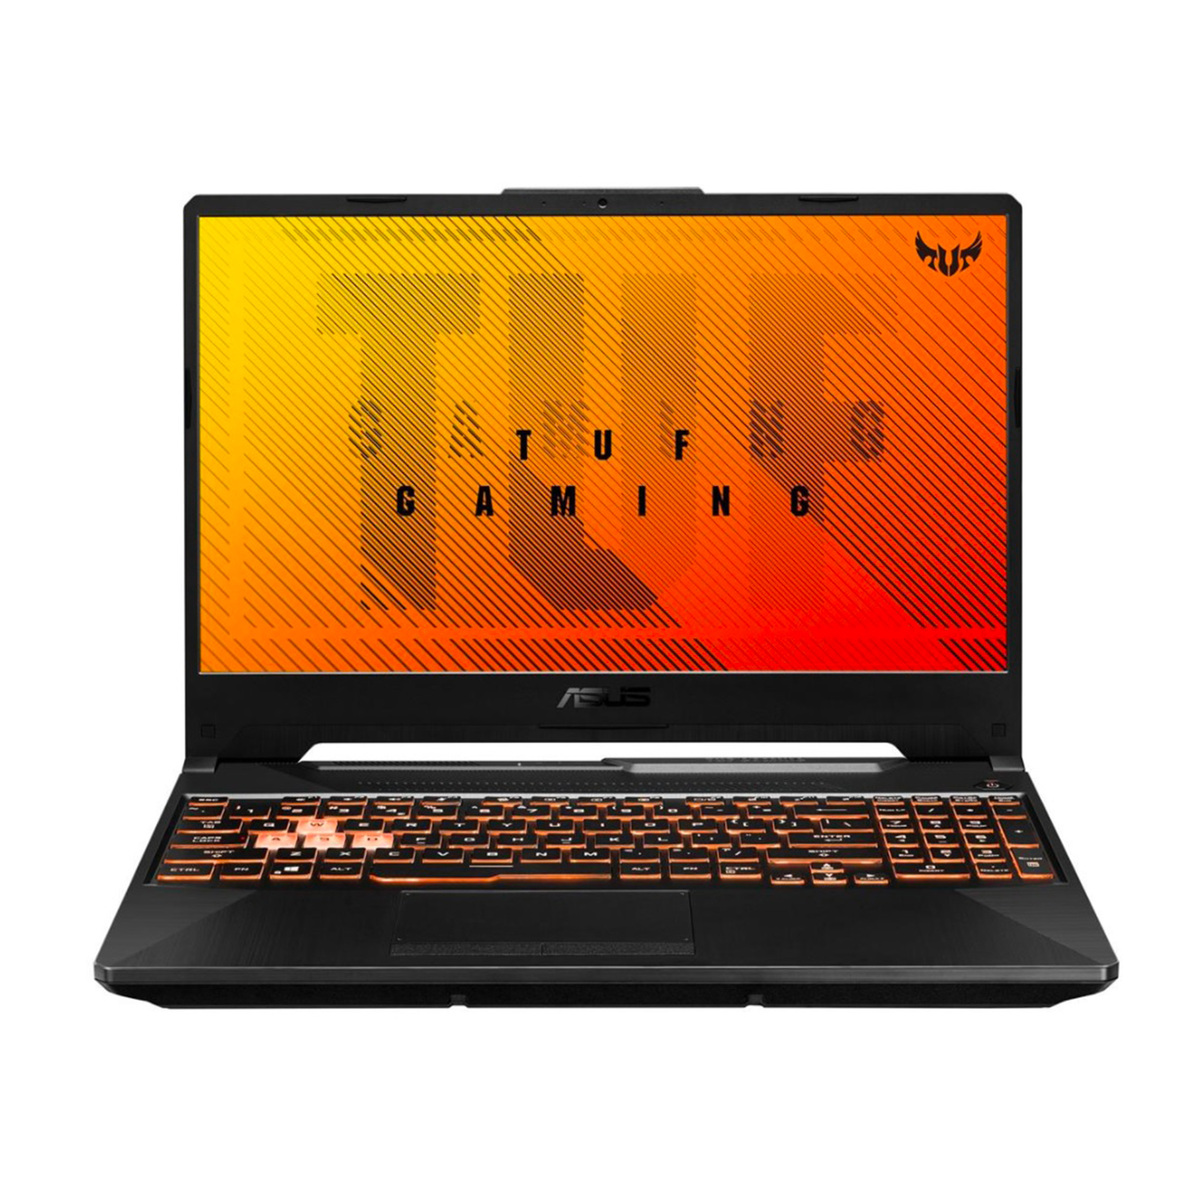 Asus TUF Gaming Notebook FX506LI-BQ057T,Intel Core i5,8GB RAM,512GB SSD,4GB GA,15.6� FHD,Windows 10